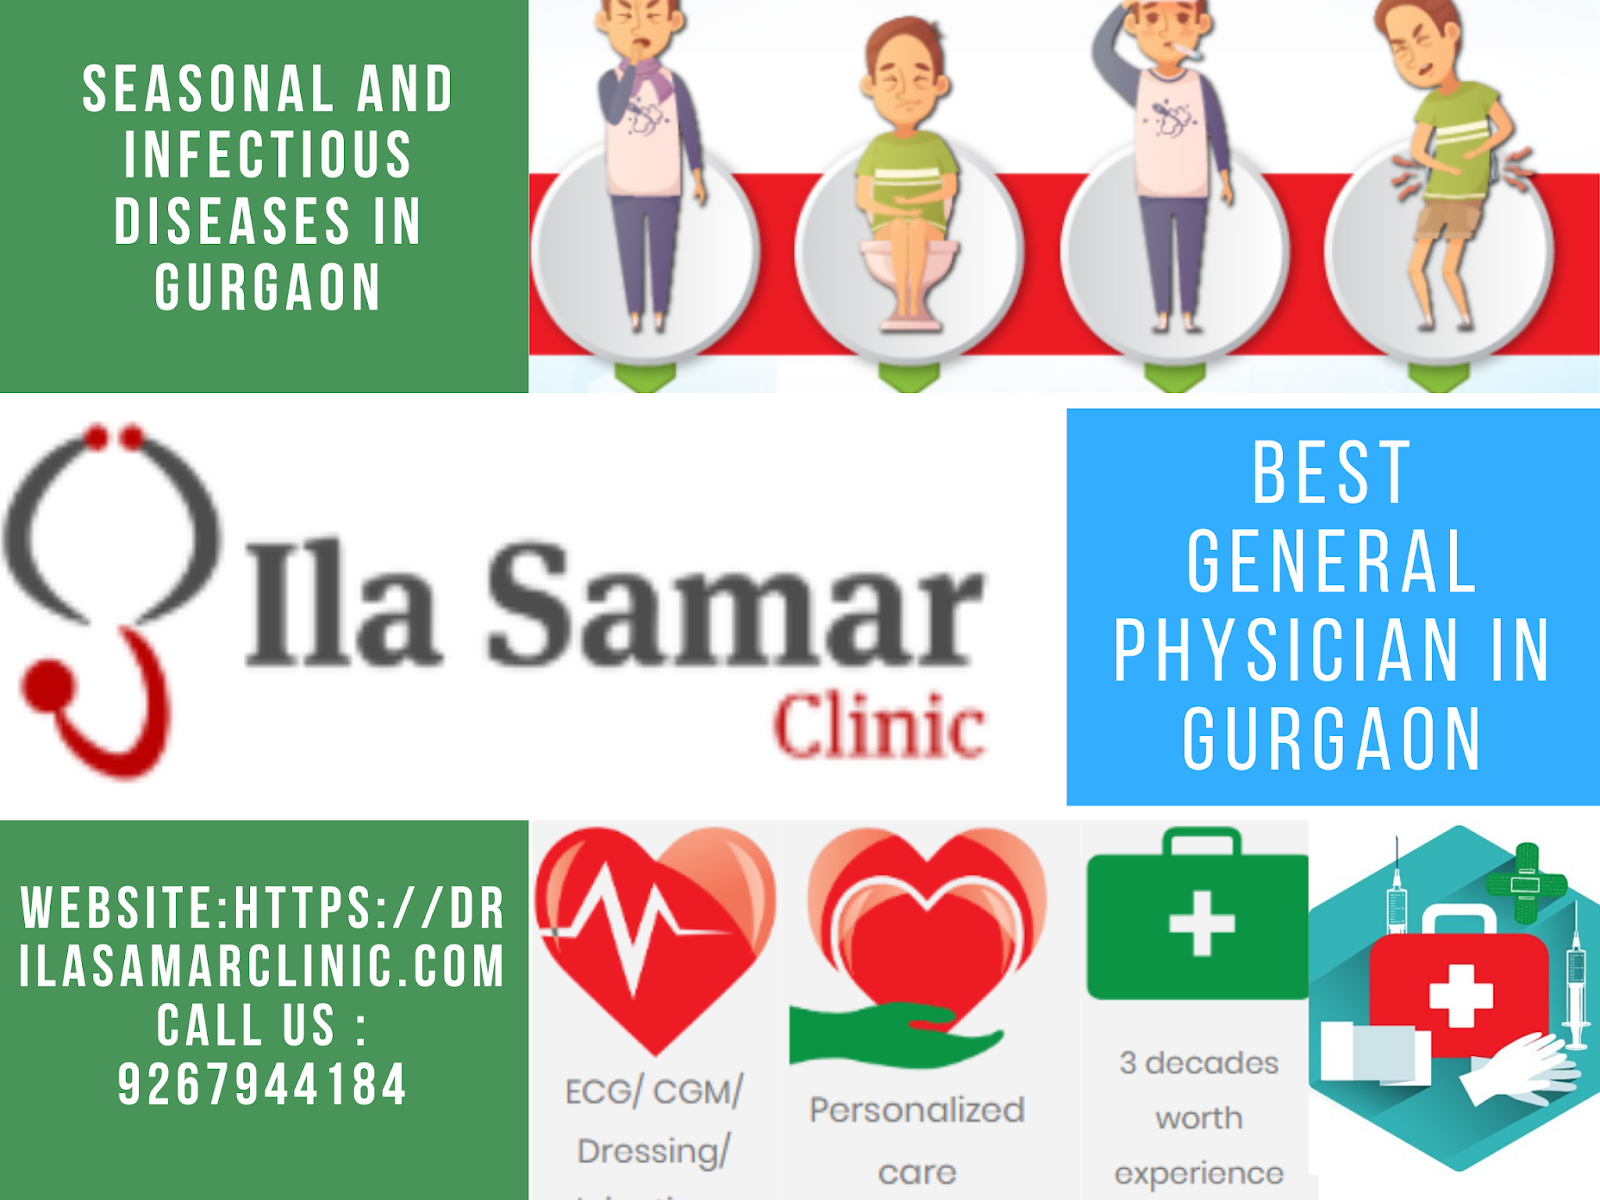 Dr Ila Samar clinic Medical Services | Clinics